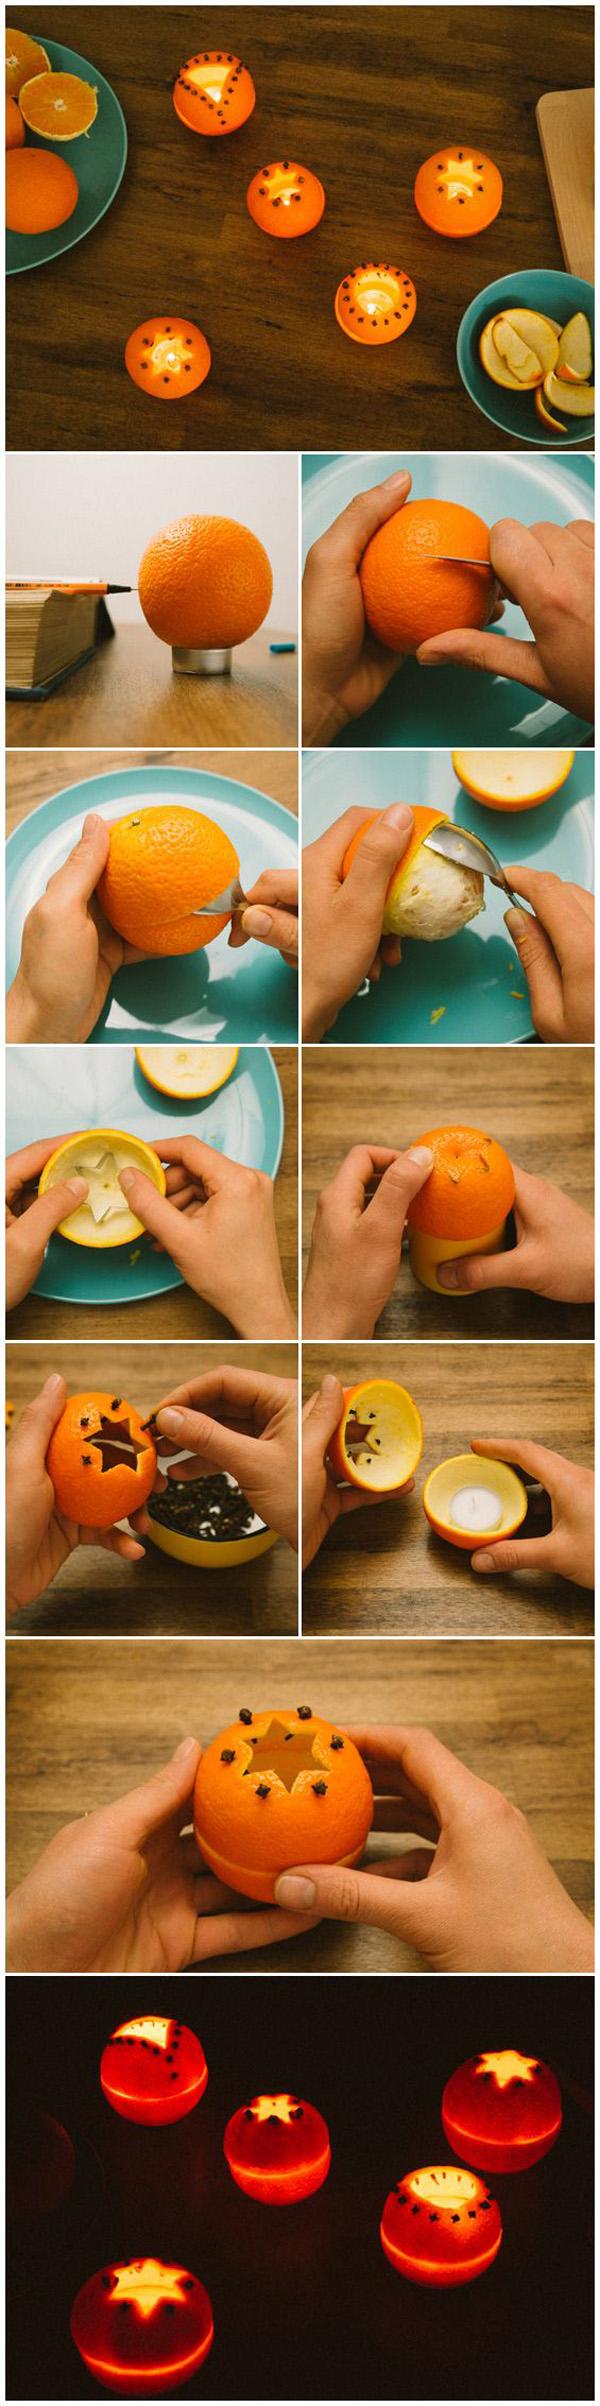 DIY lysestaker laget av appelsiner